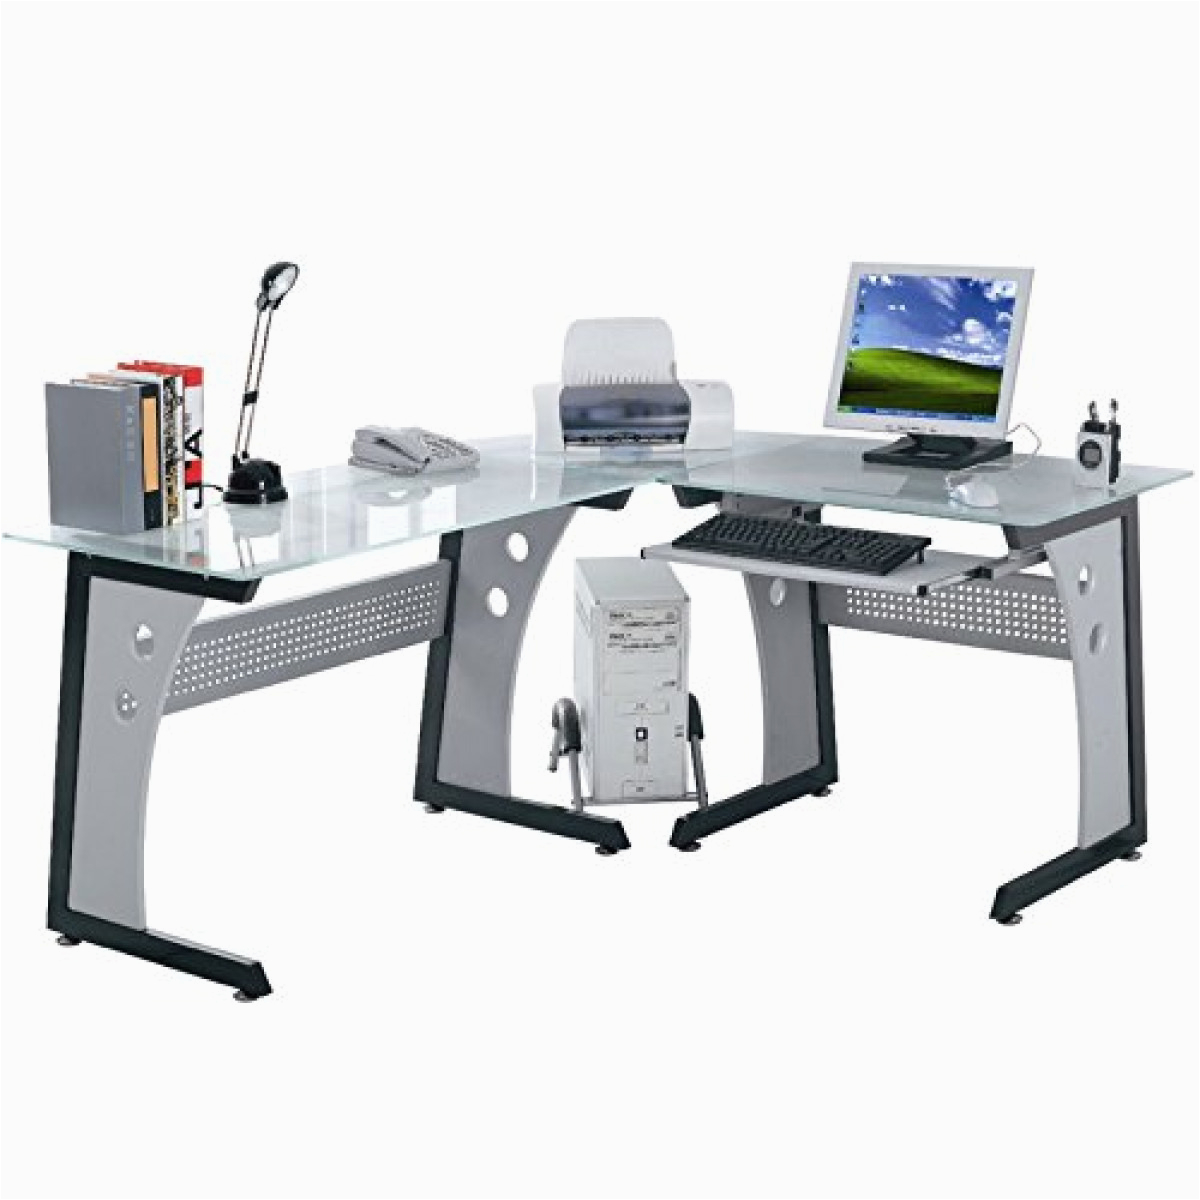 Willhaben Computer Tisch Office Desk Putertisch Eck Schreibtisch Tisch Glas Büro